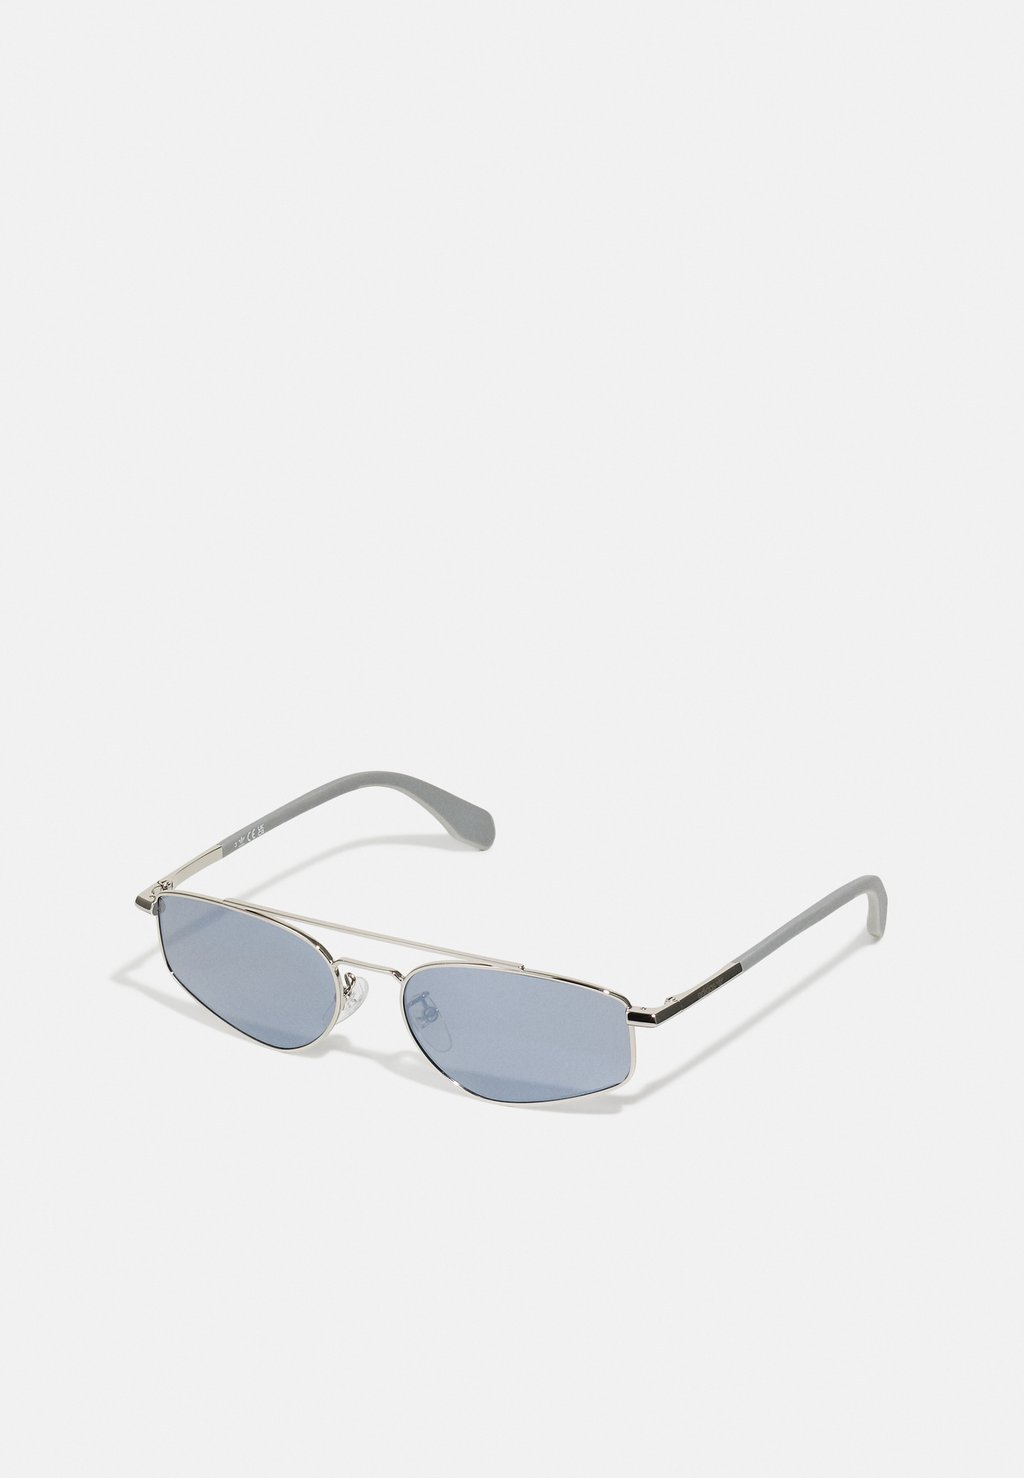 Солнцезащитные очки Unisex adidas Originals, цвет silver-coloured солнцезащитные очки unisex gucci цвет black silver coloured